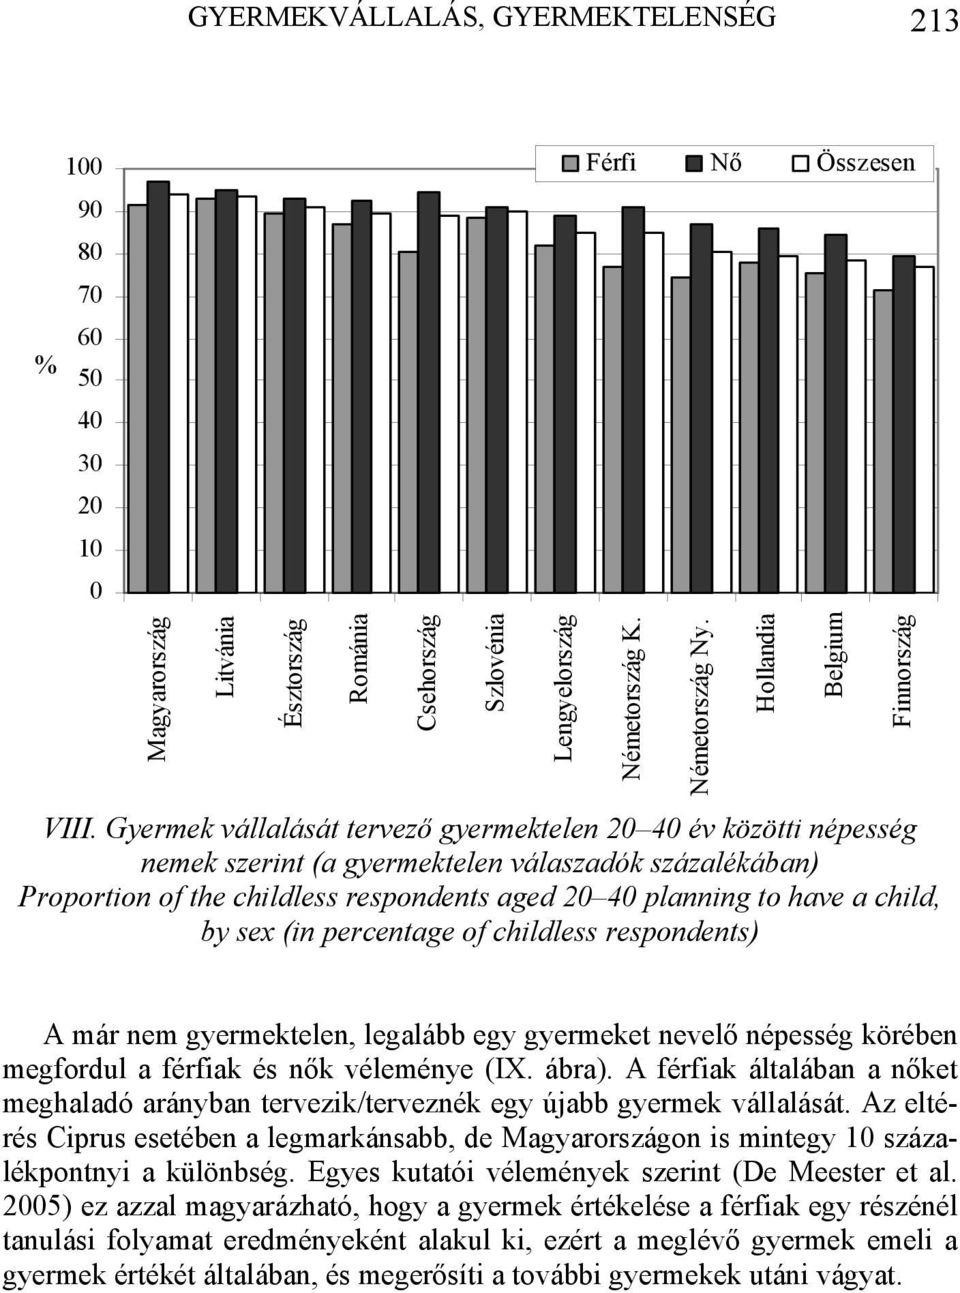 by sex (in percentage of childless respondents) Lengyelország Németország K. Németország Ny.